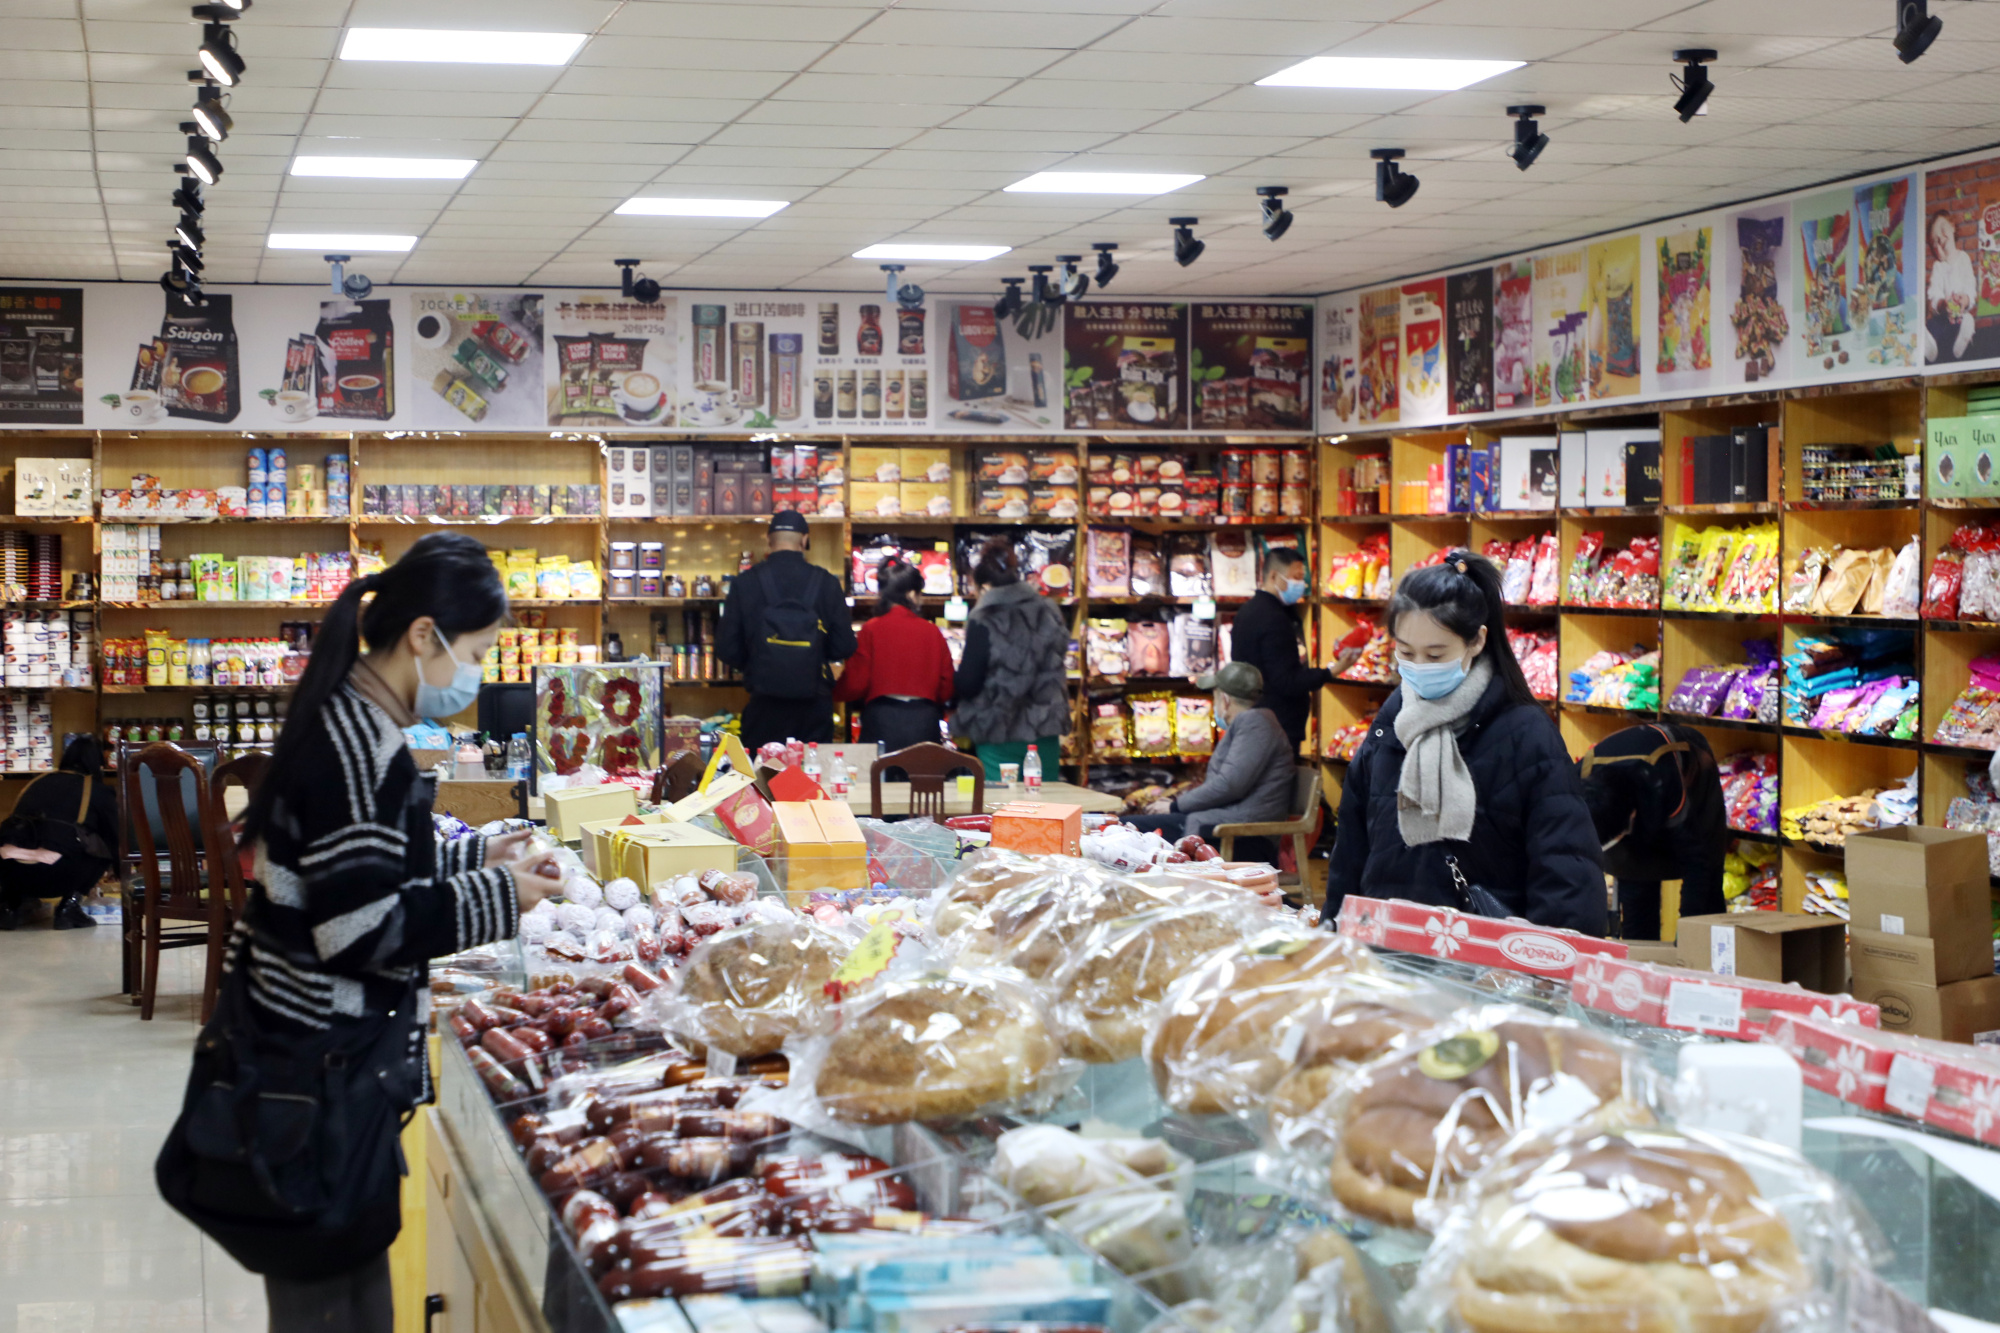 琳琅满目的俄罗斯商品吸引众多中国人购买(央广网发 徐旭 摄)